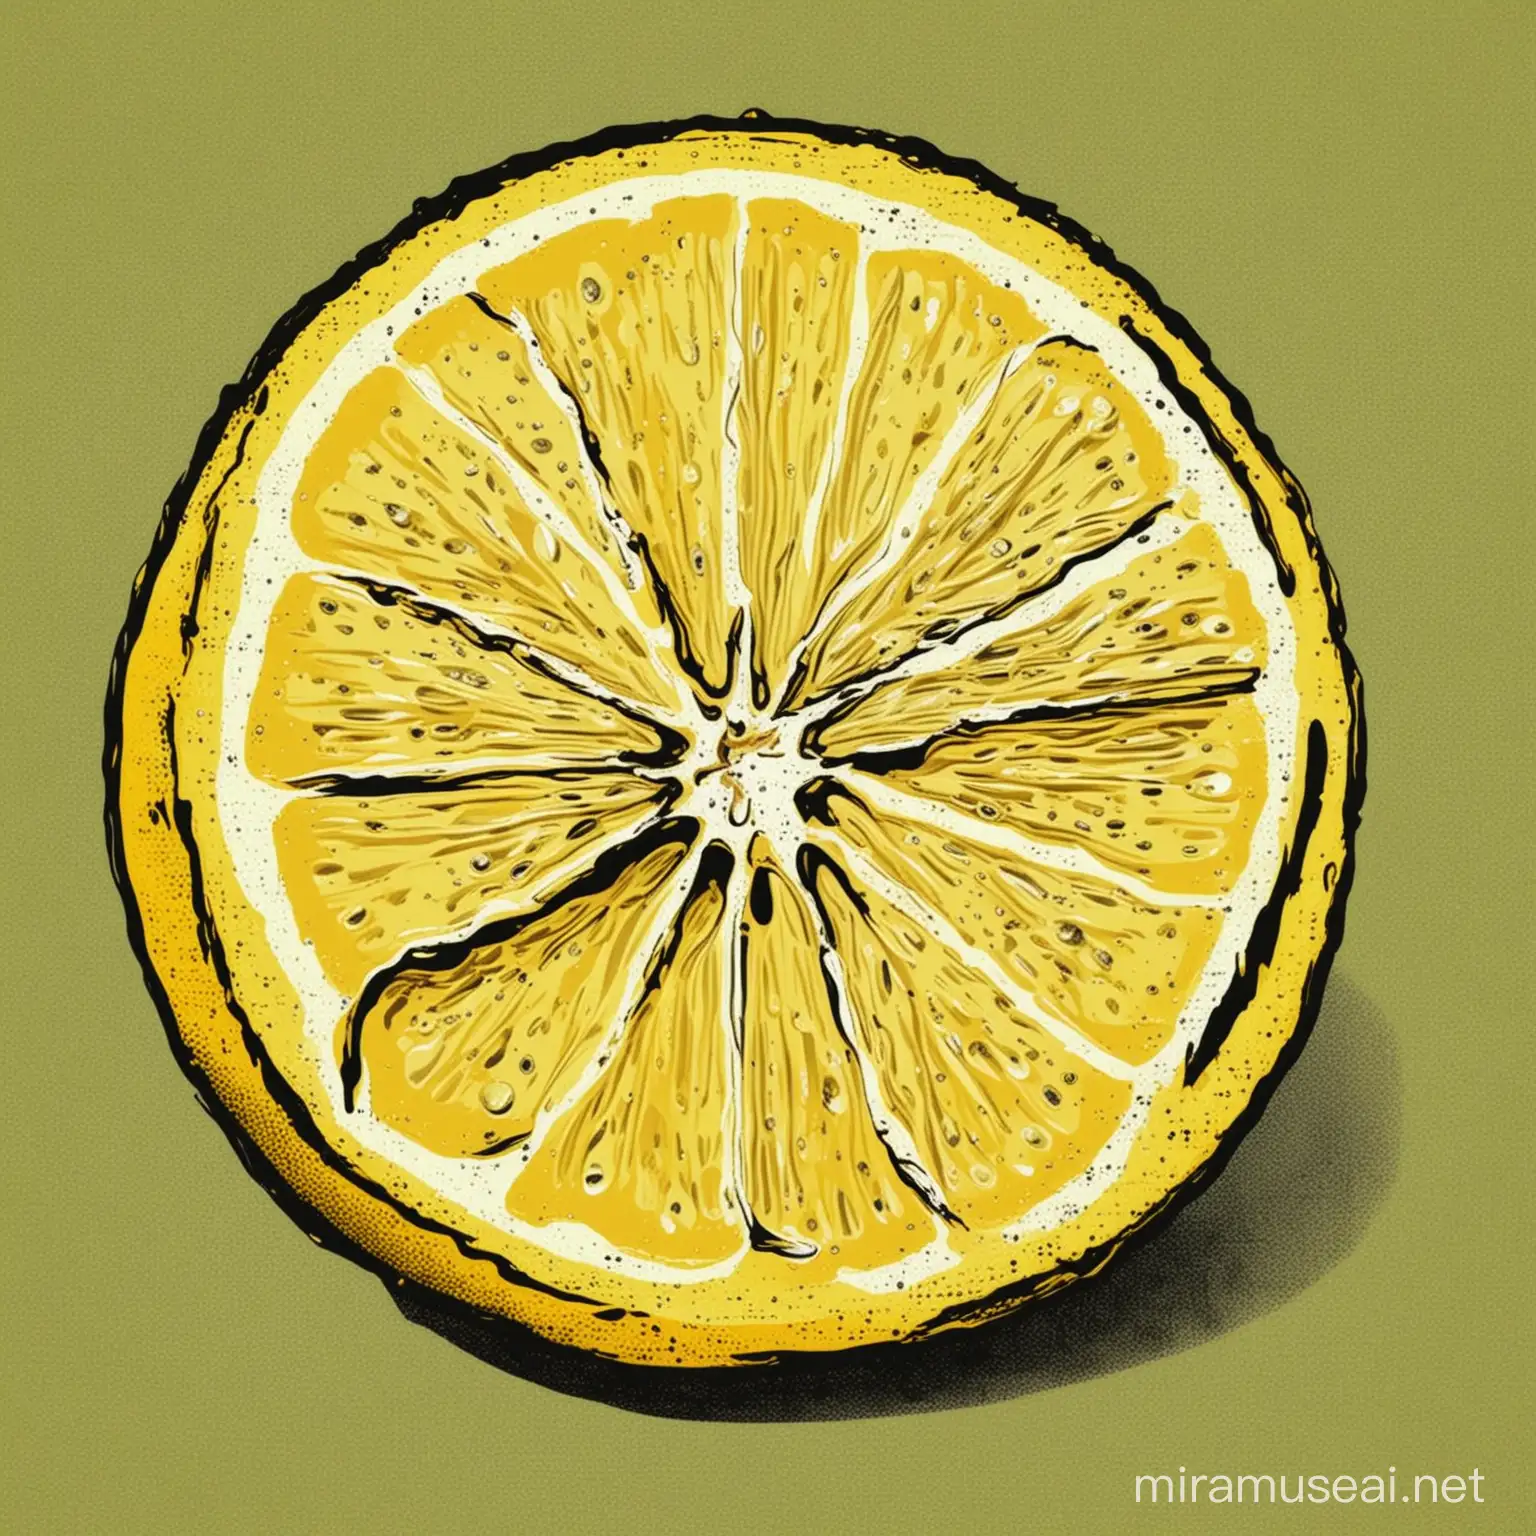 pop art lemon

